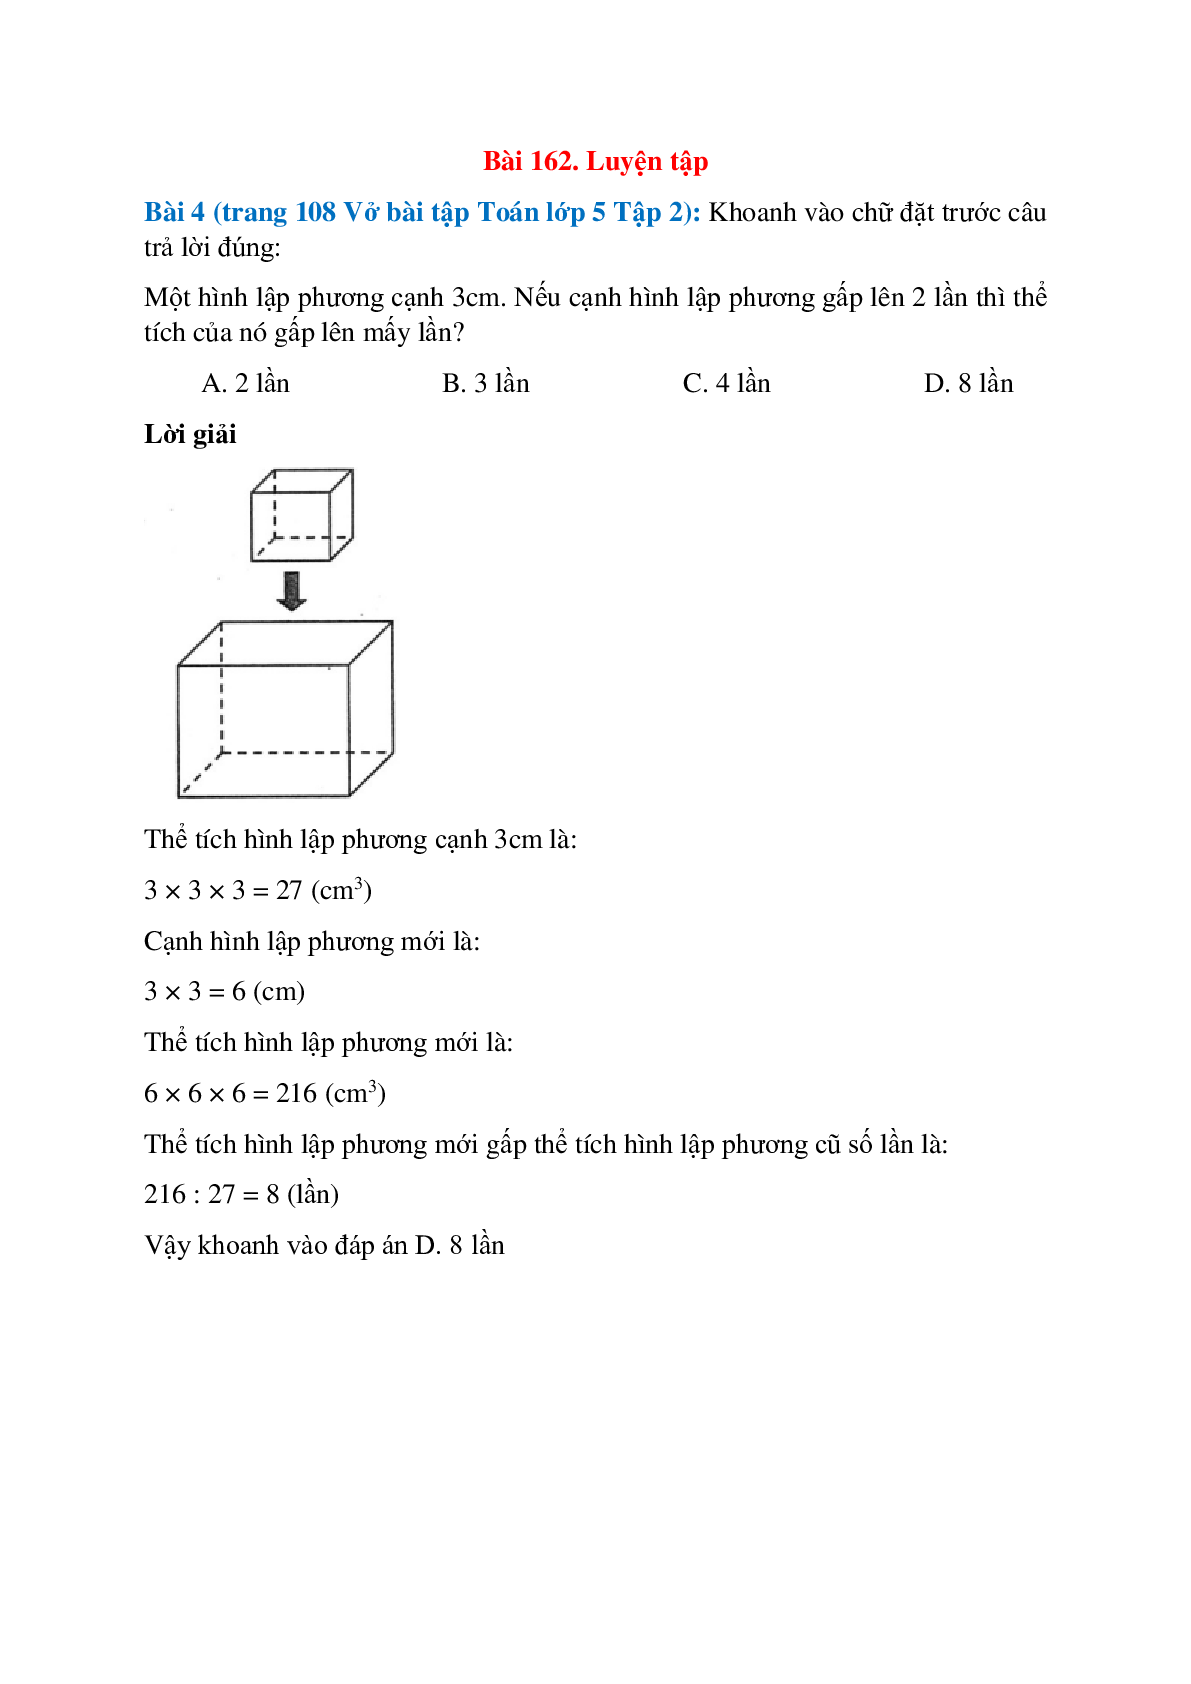 Khoanh vào chữ đặt trước câu trả lời đúng: Một hình lập phương cạnh 3cm (trang 1)